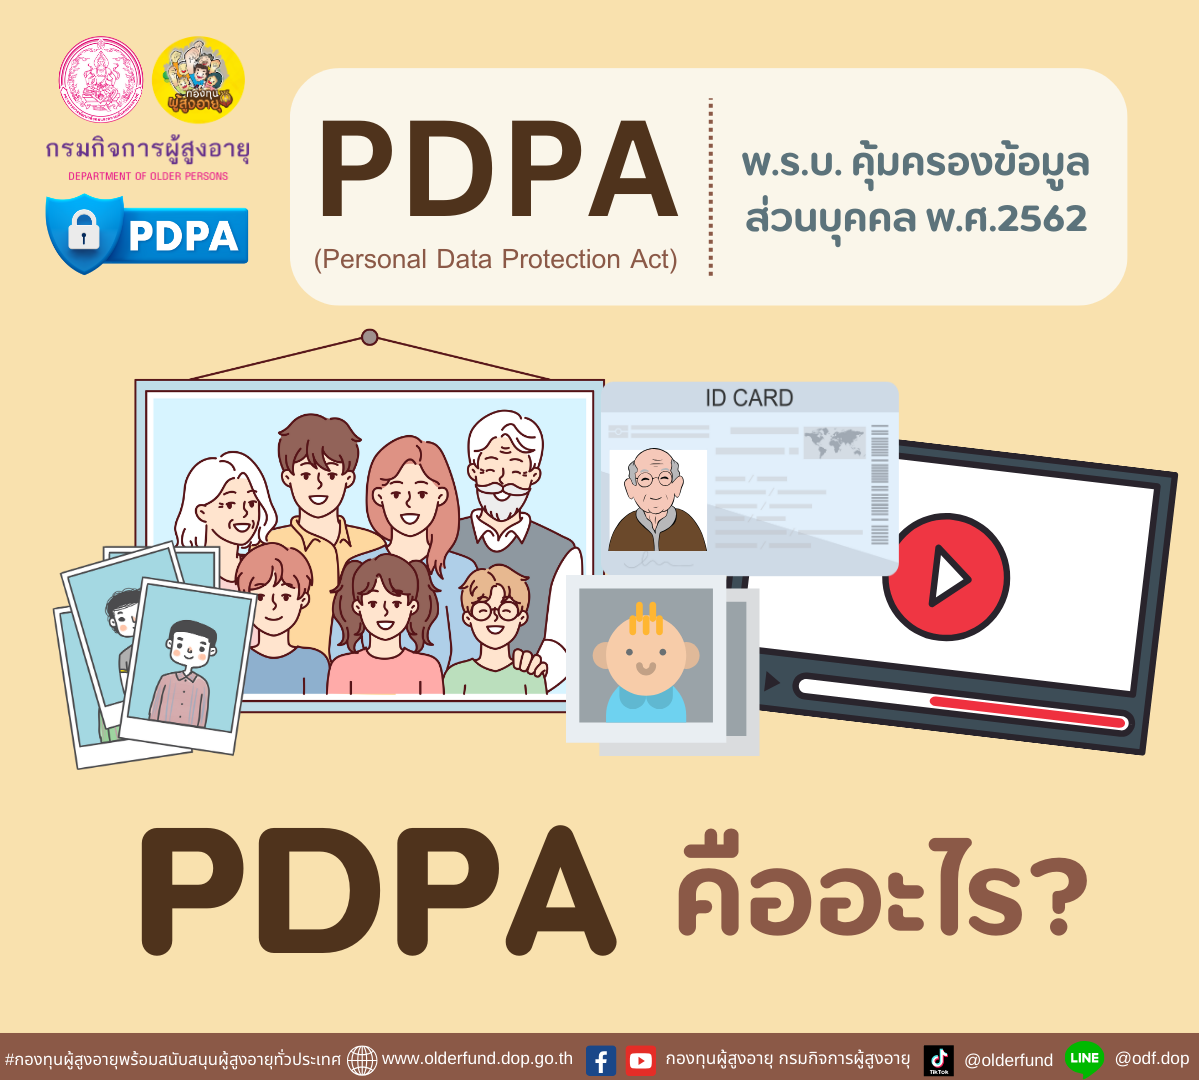 ทำความรู้จัก “PDPA” คืออะไร? BY กองทุนผู้สูงอายุ